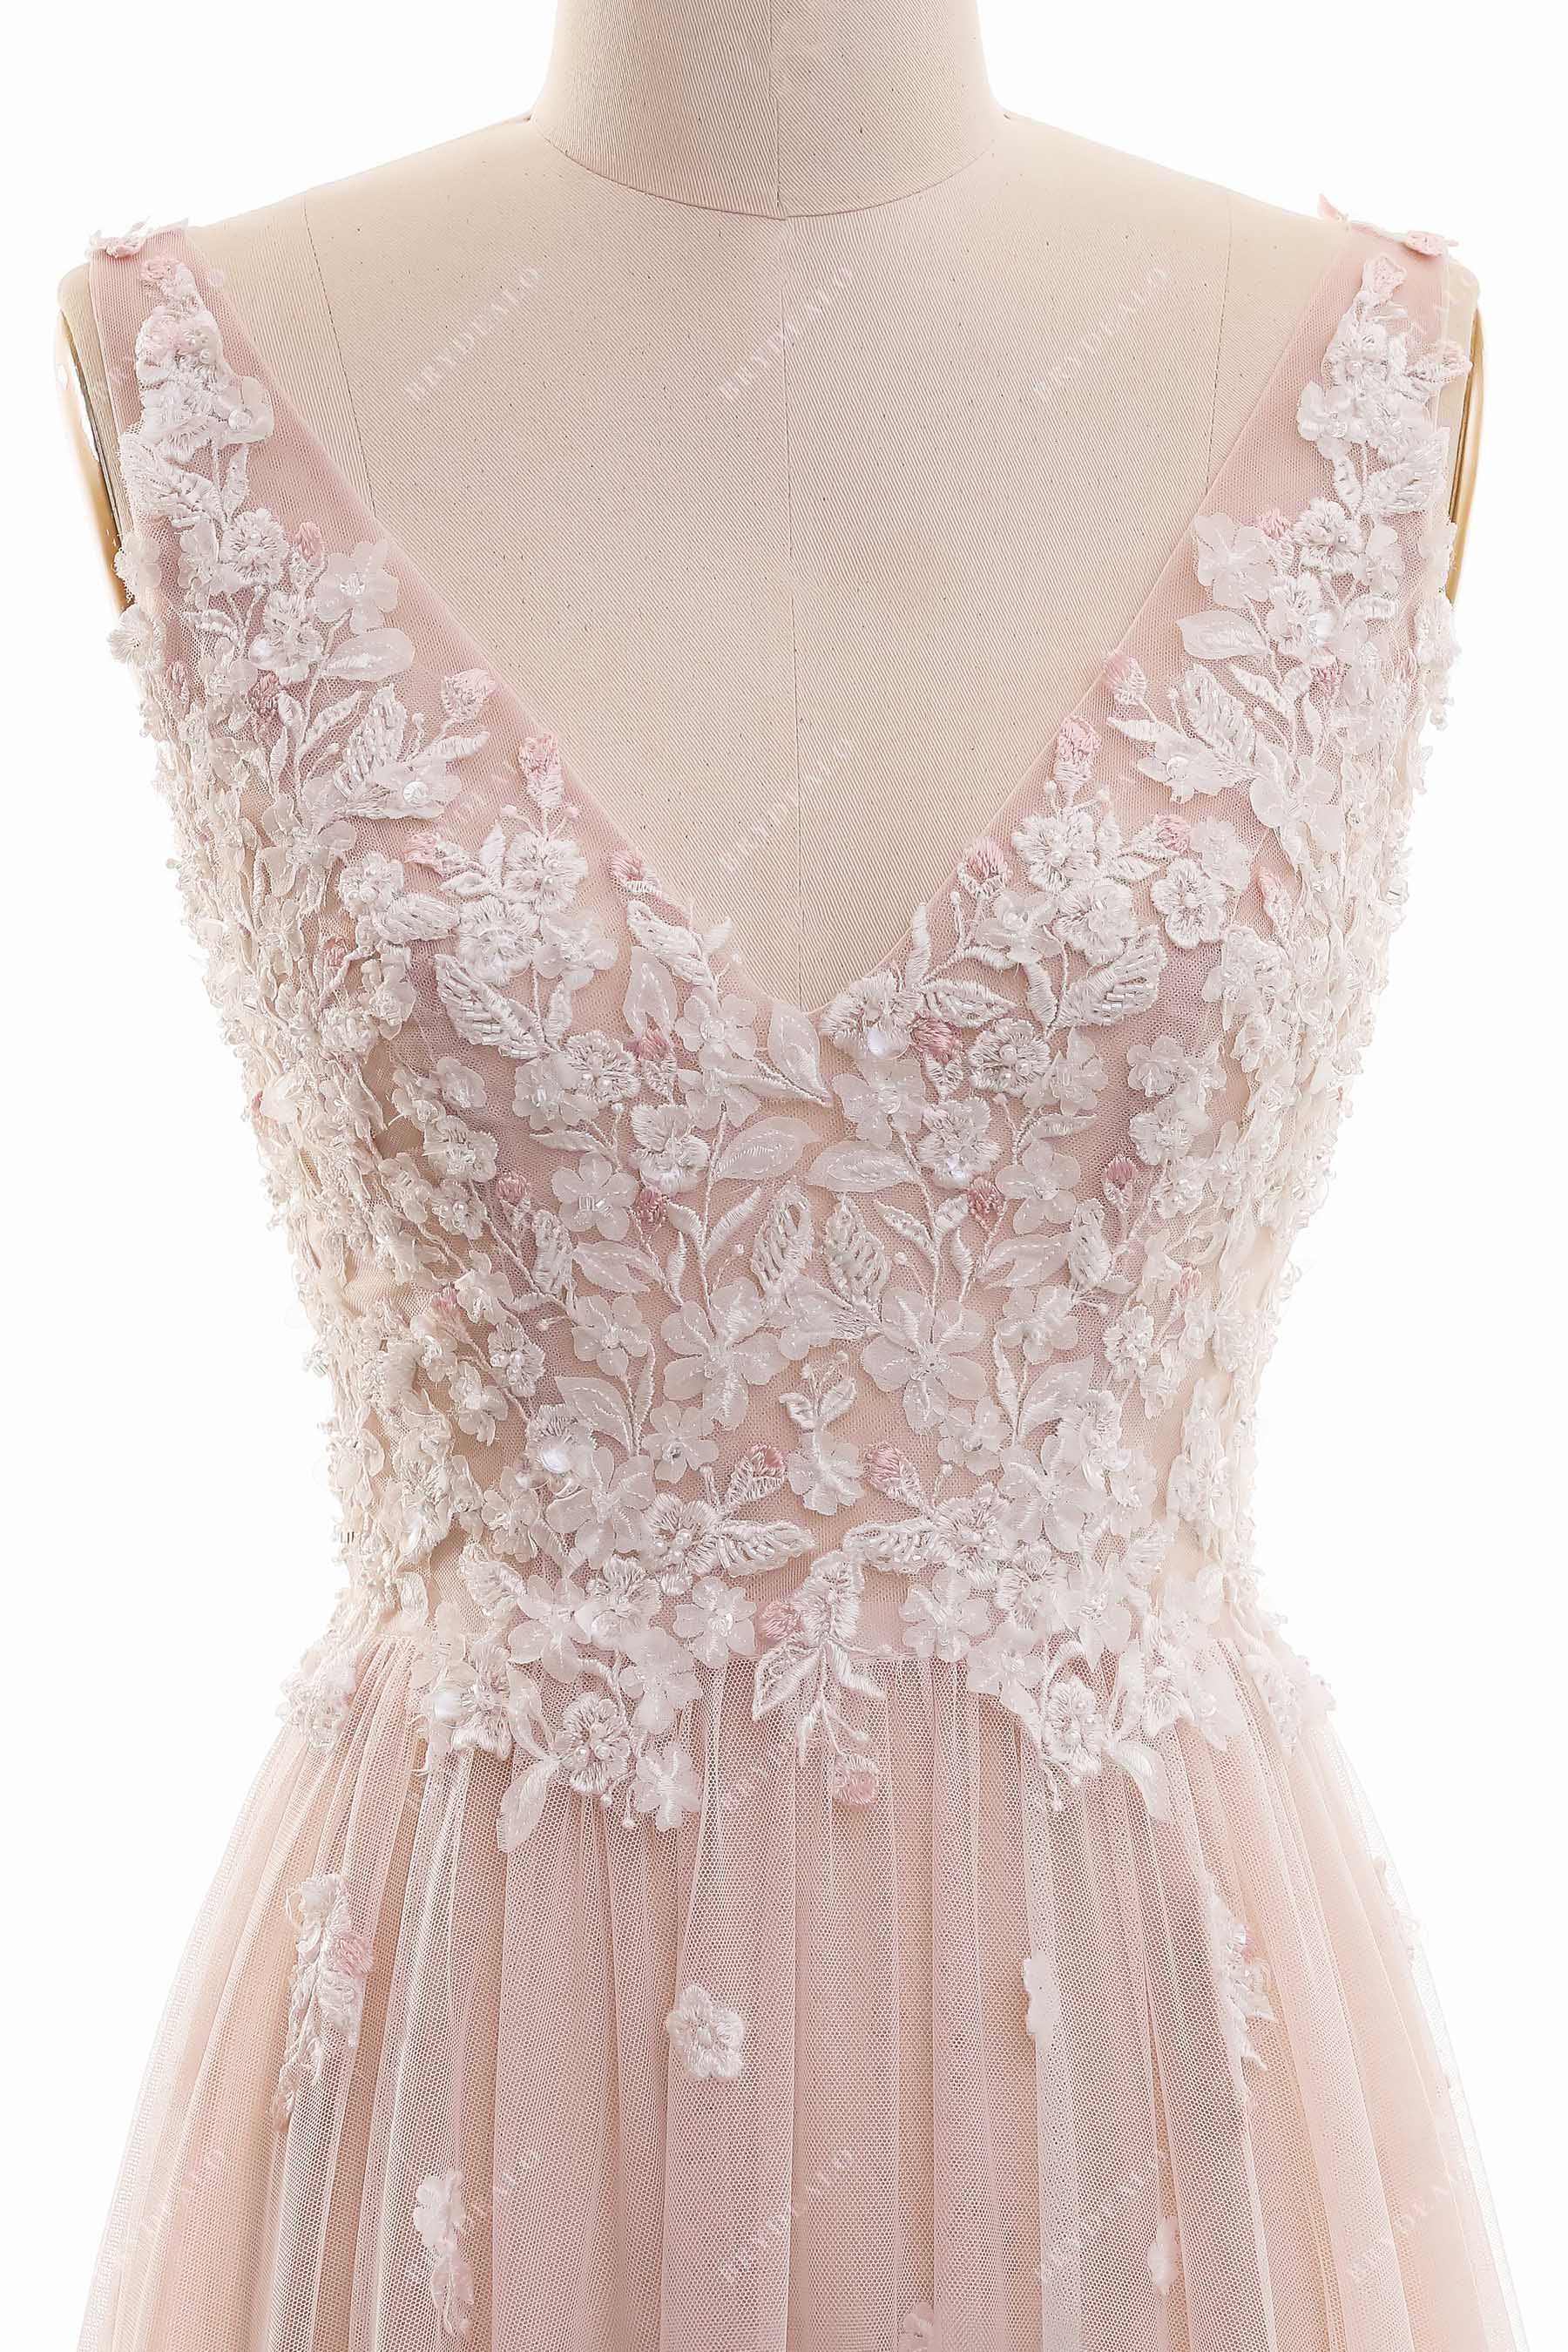 V-neck Beaded Lace Dusty Rose Wedding Dress